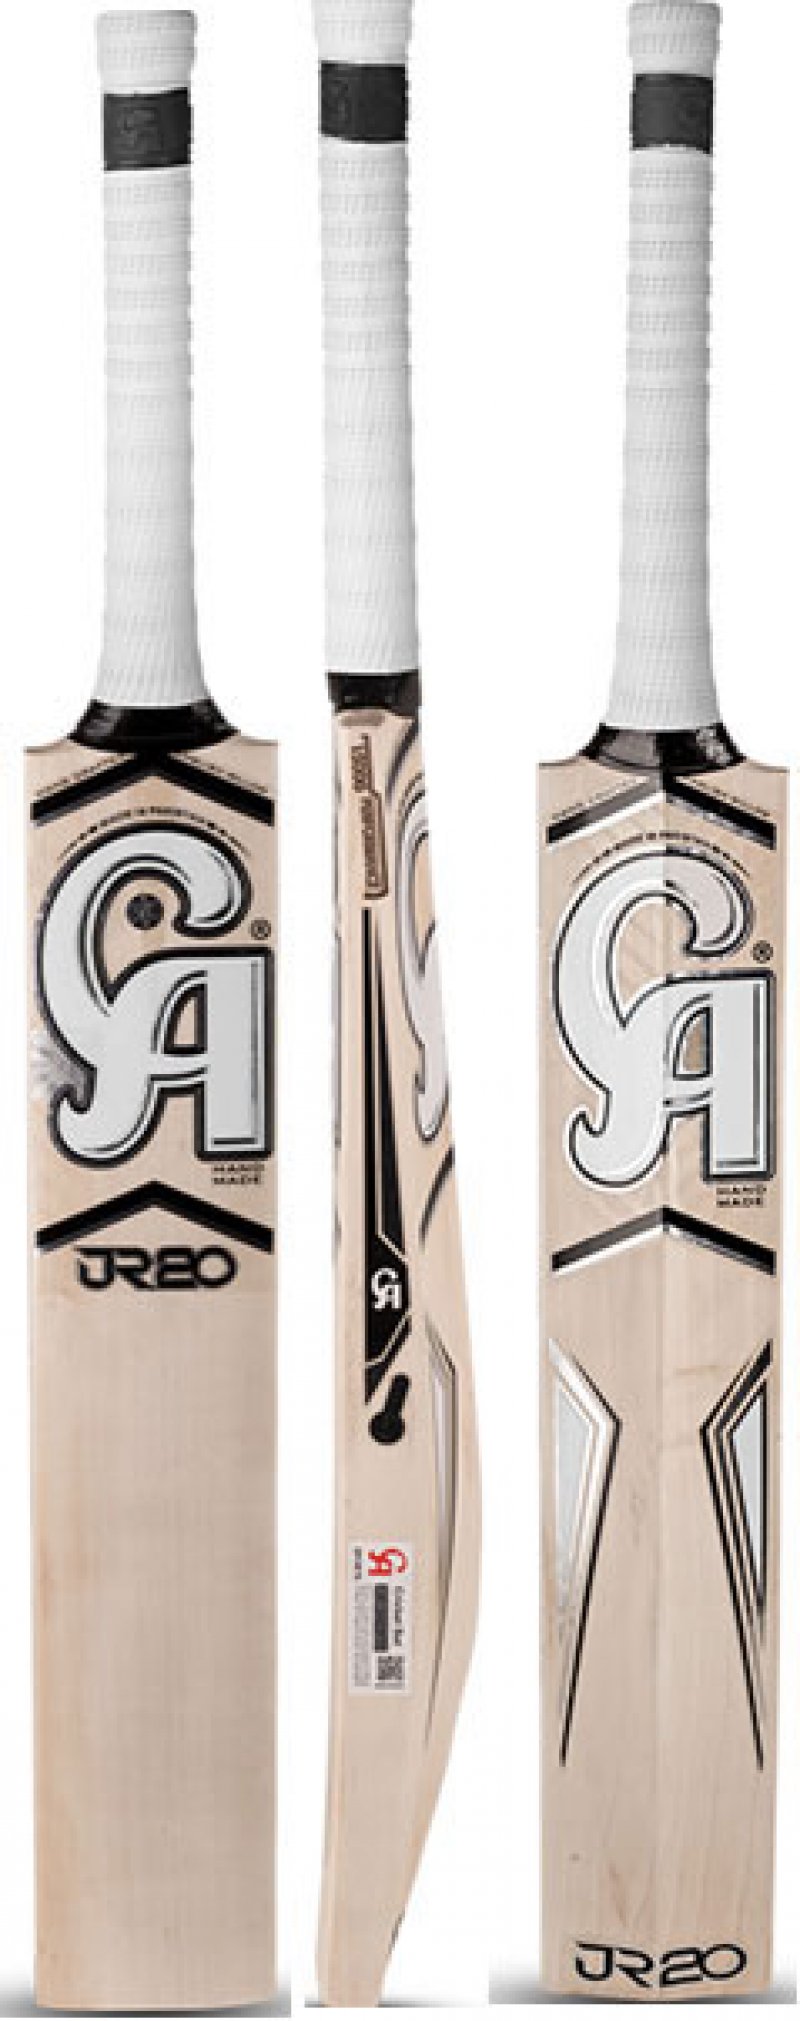 CA JR20 Performance 15000 Cricket Bat